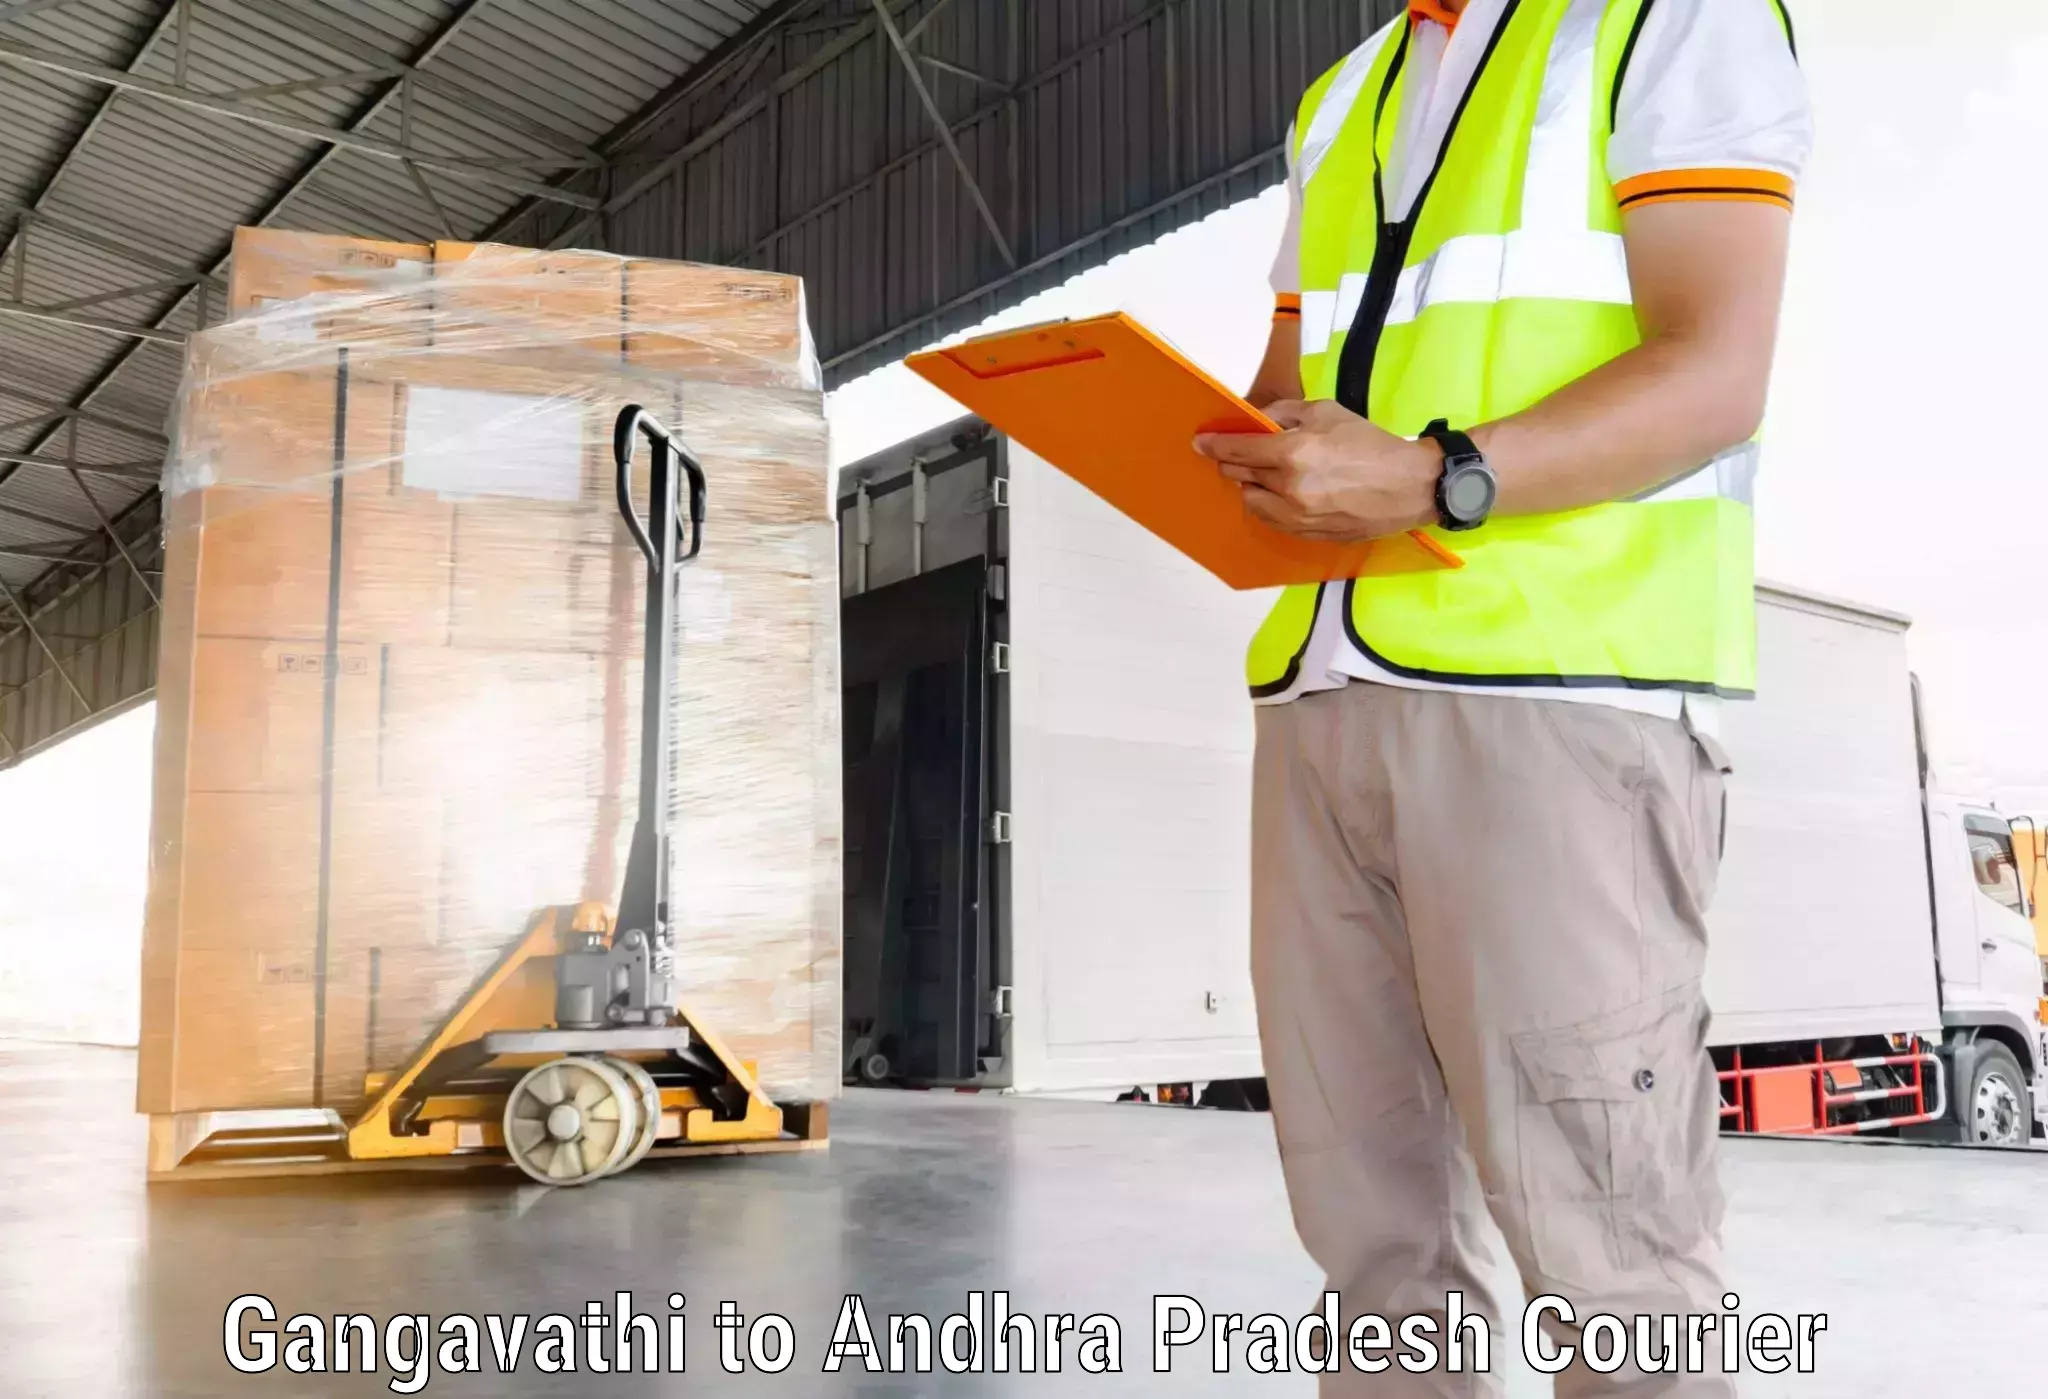 Express delivery capabilities Gangavathi to Bhimavaram